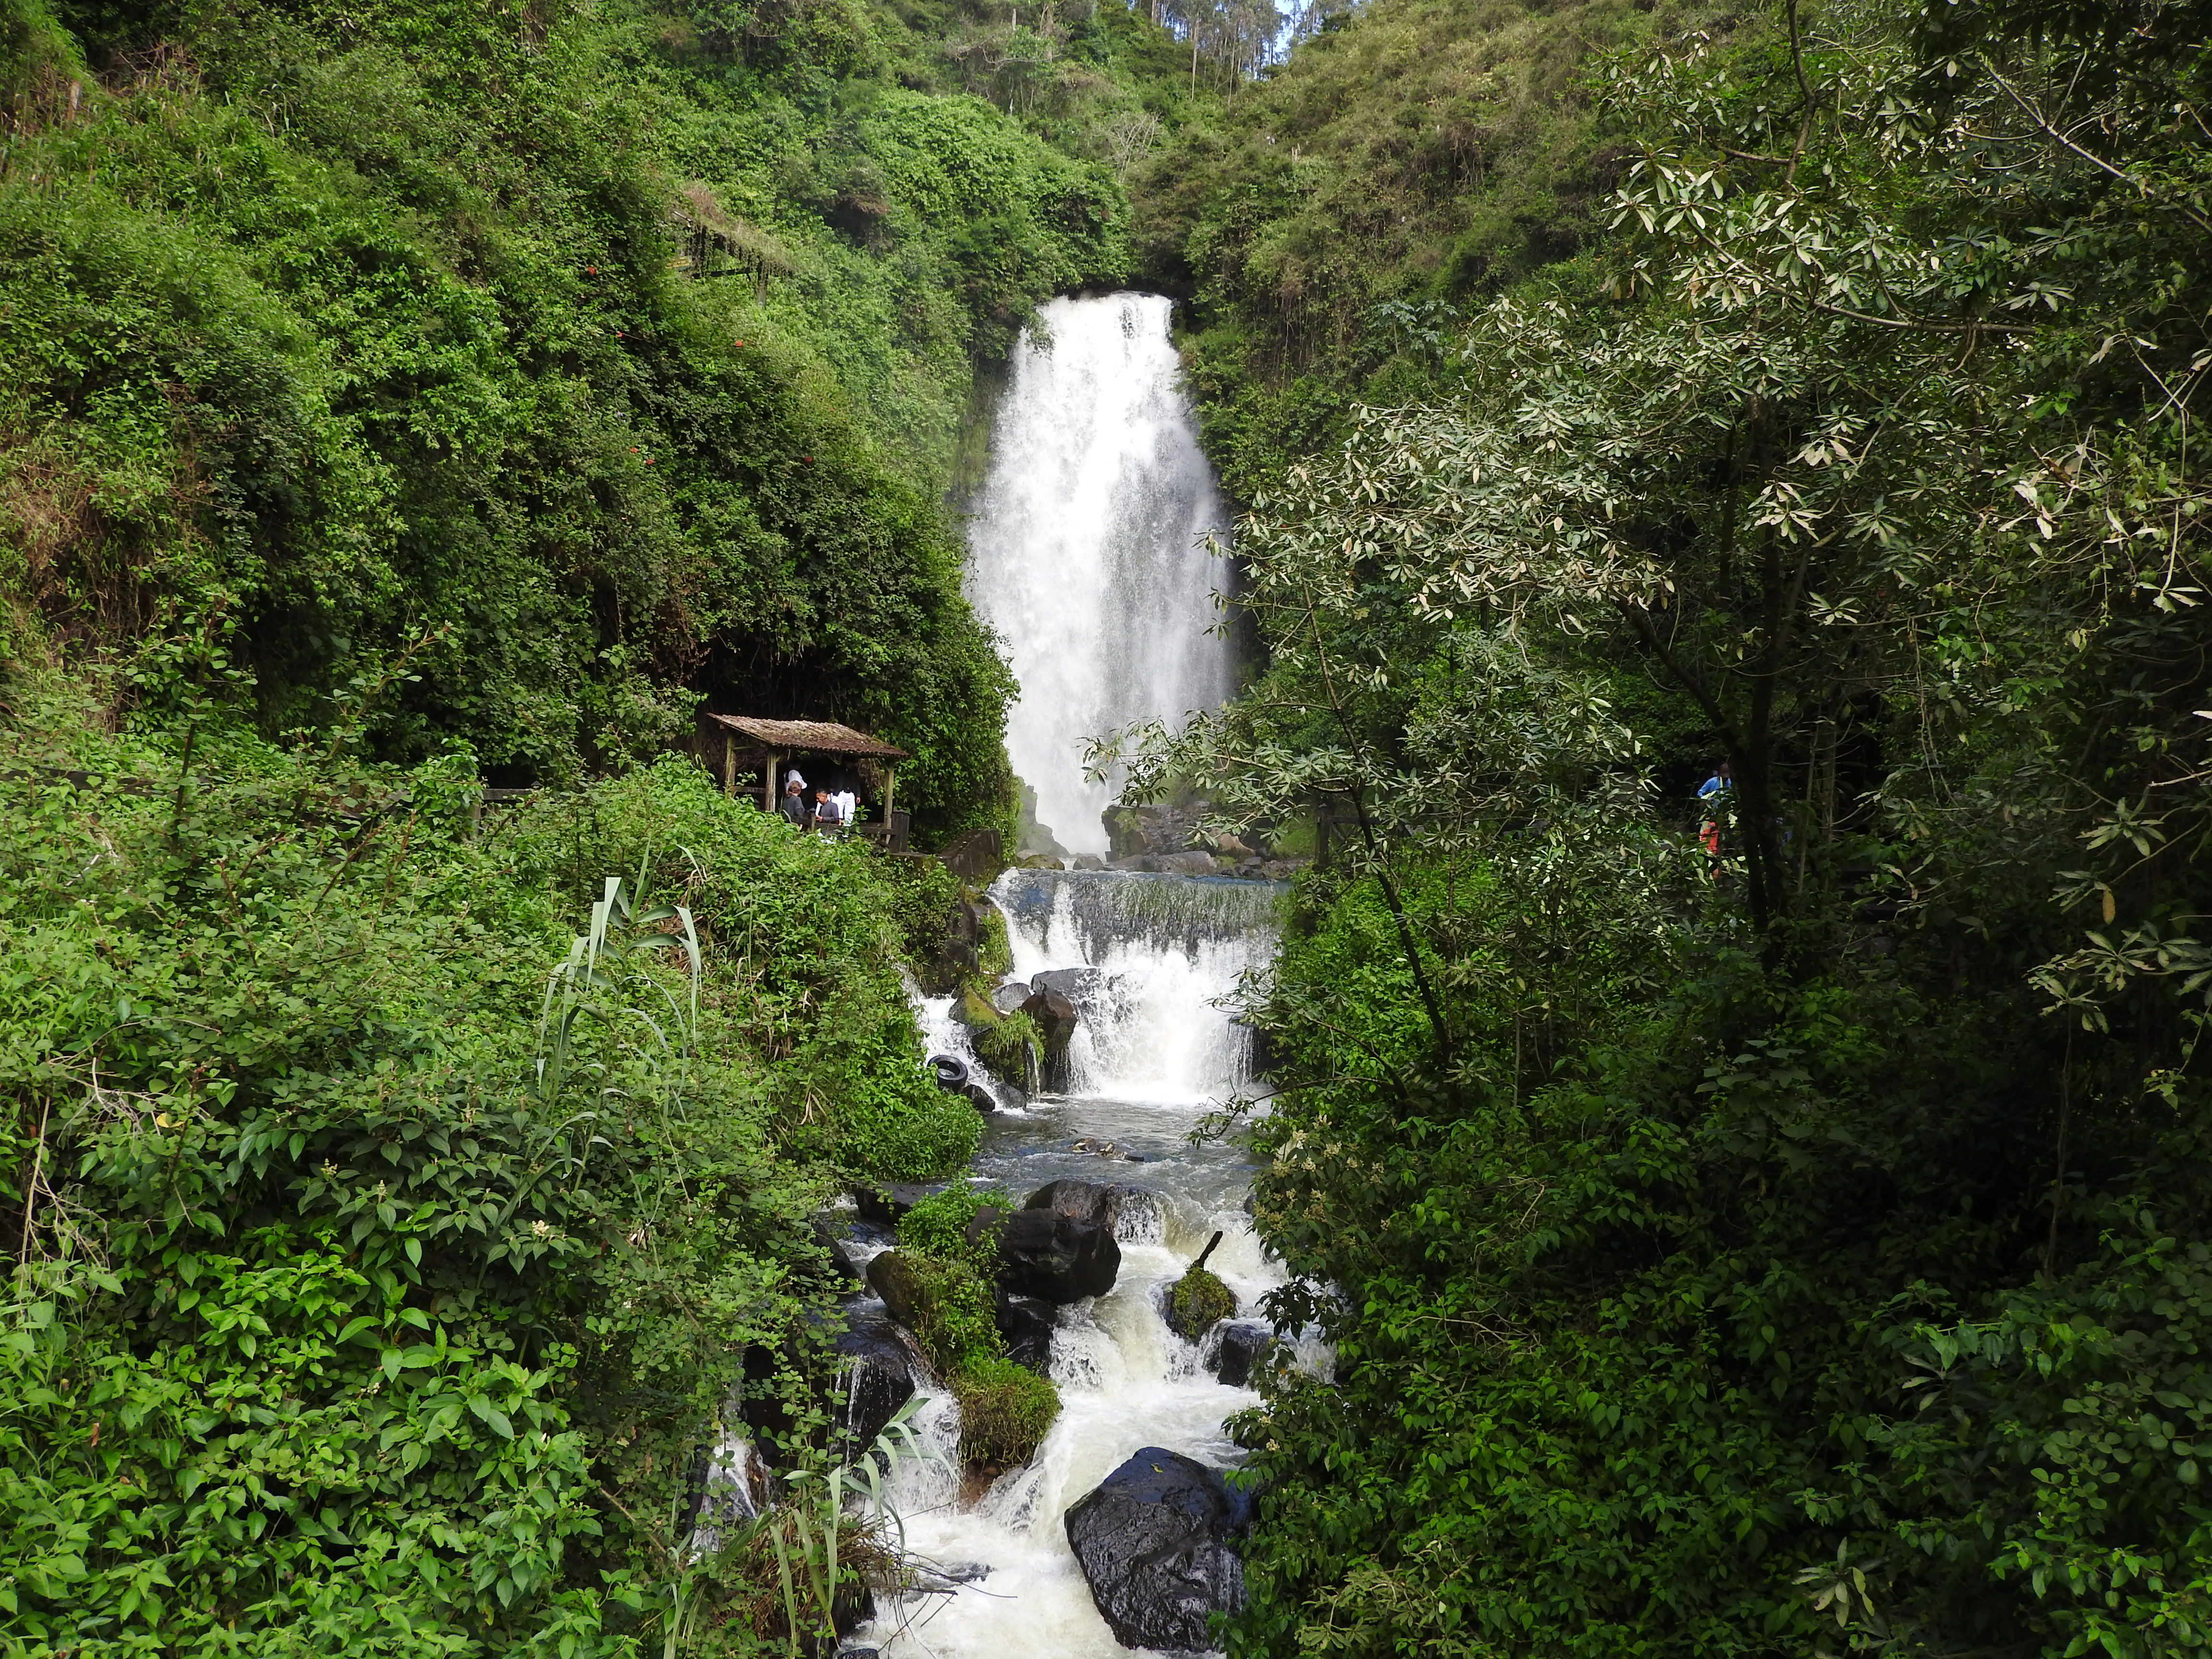 Copy of Pechuga waterfall